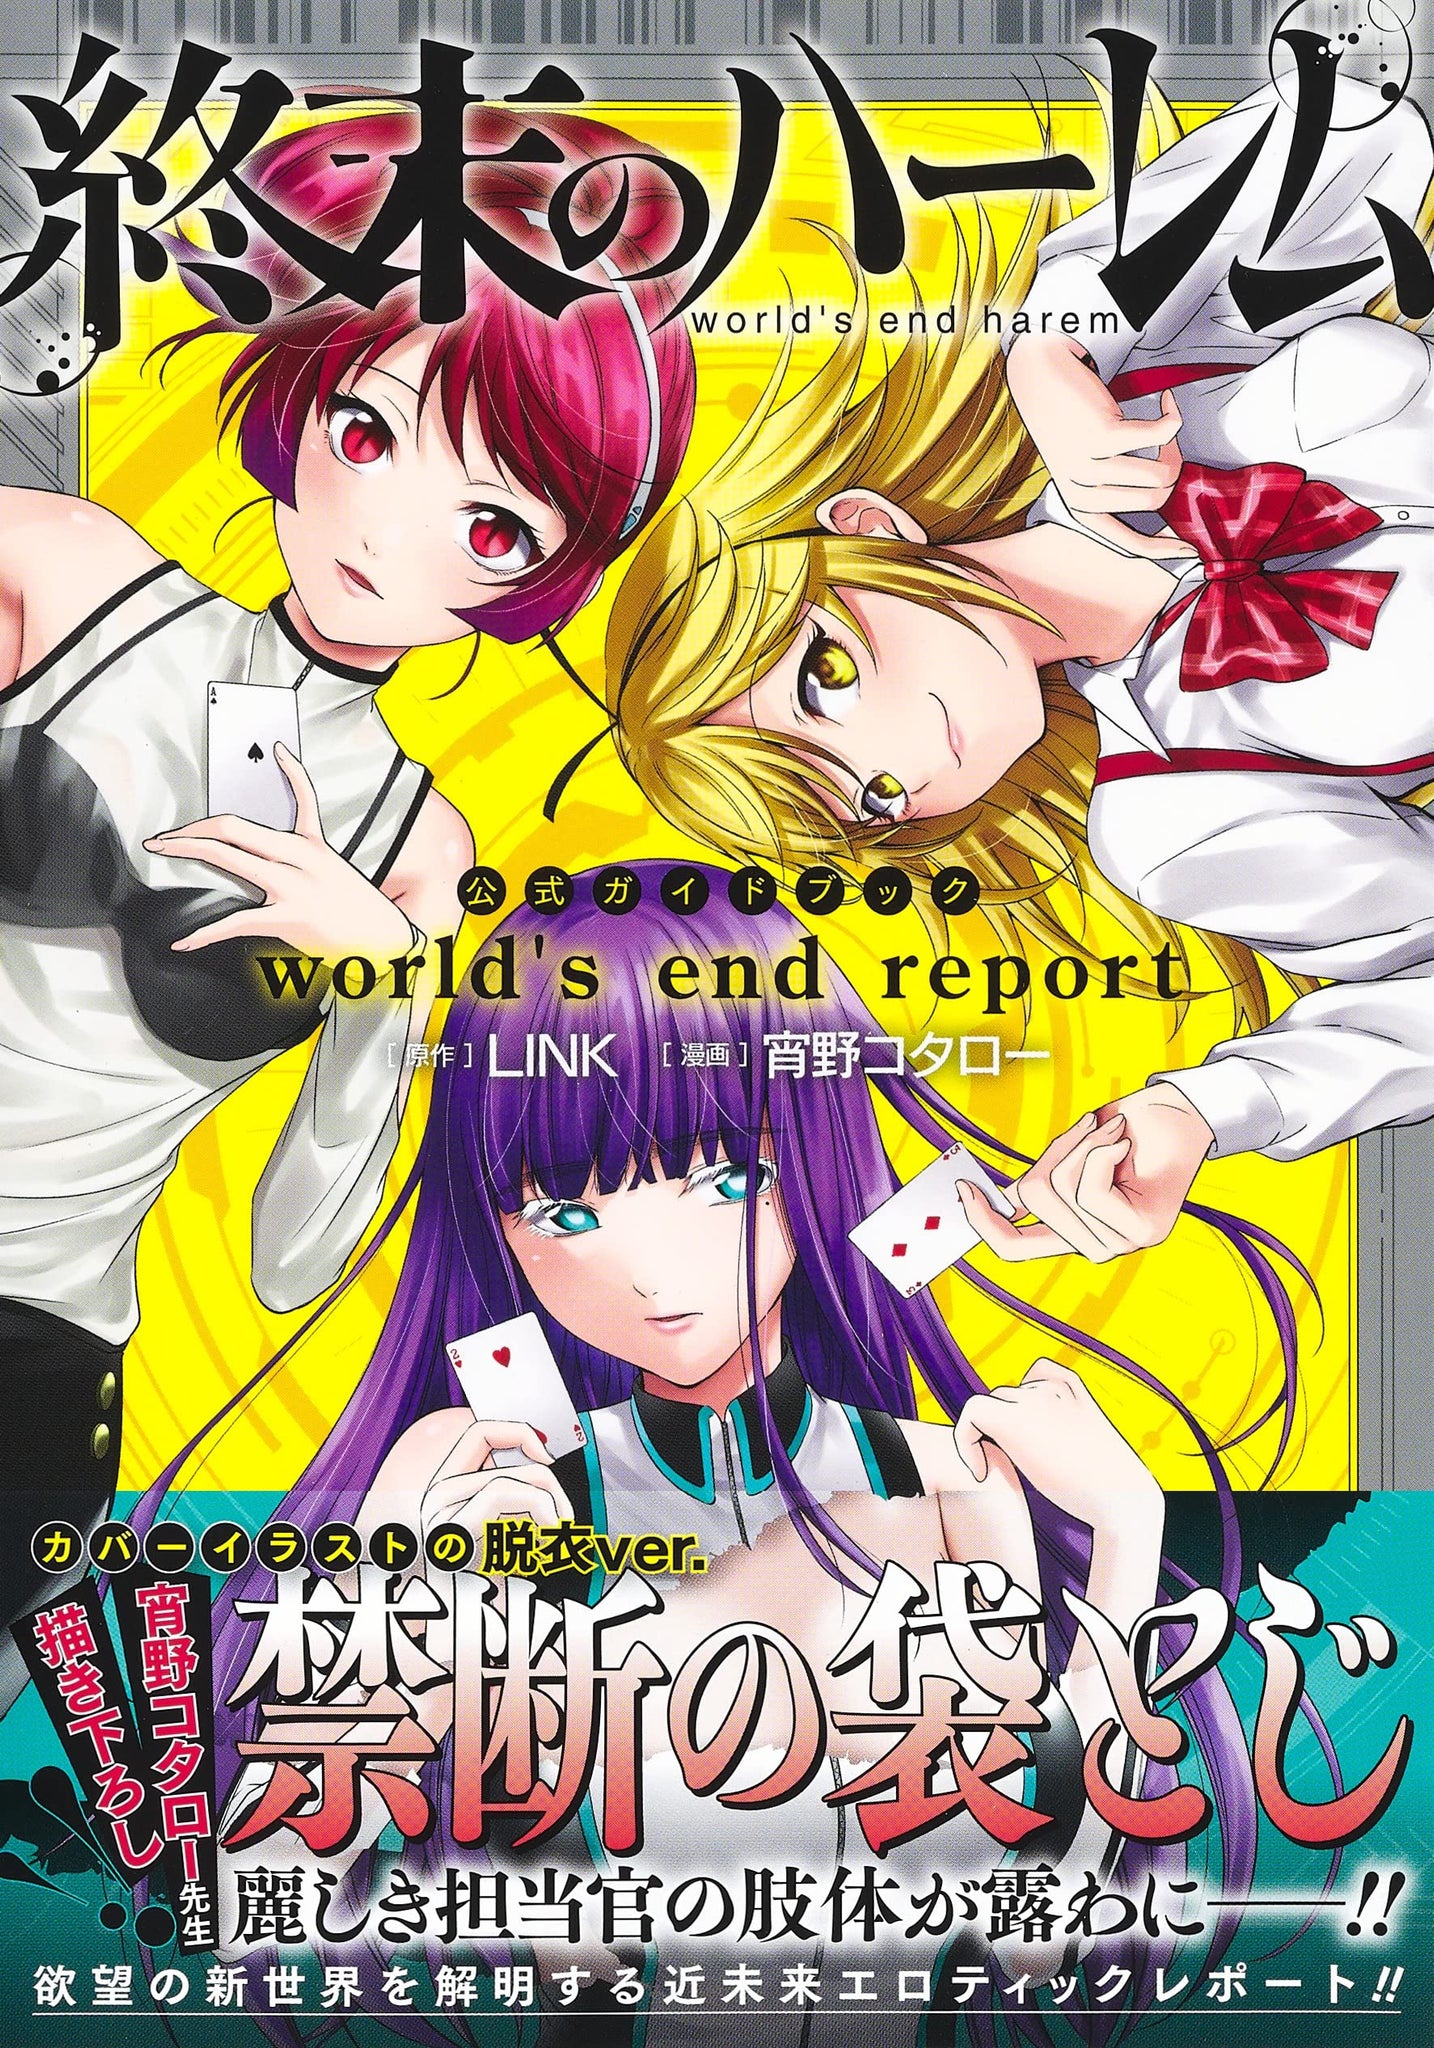 Shuumatsu no Harem - Mangá volta em breve com o título de After World. -  Anime United